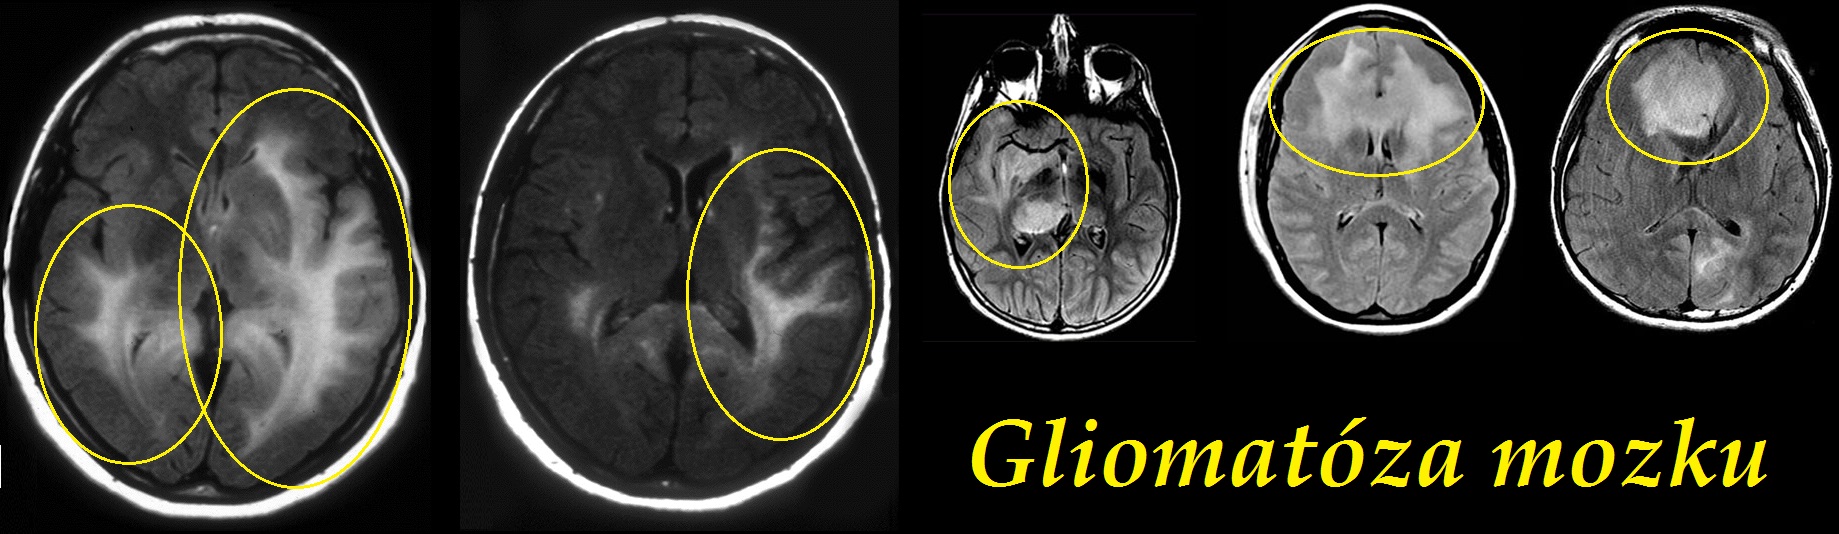 gliomatoza mozku gliomatosis cerebri priznaky projevy symptomy